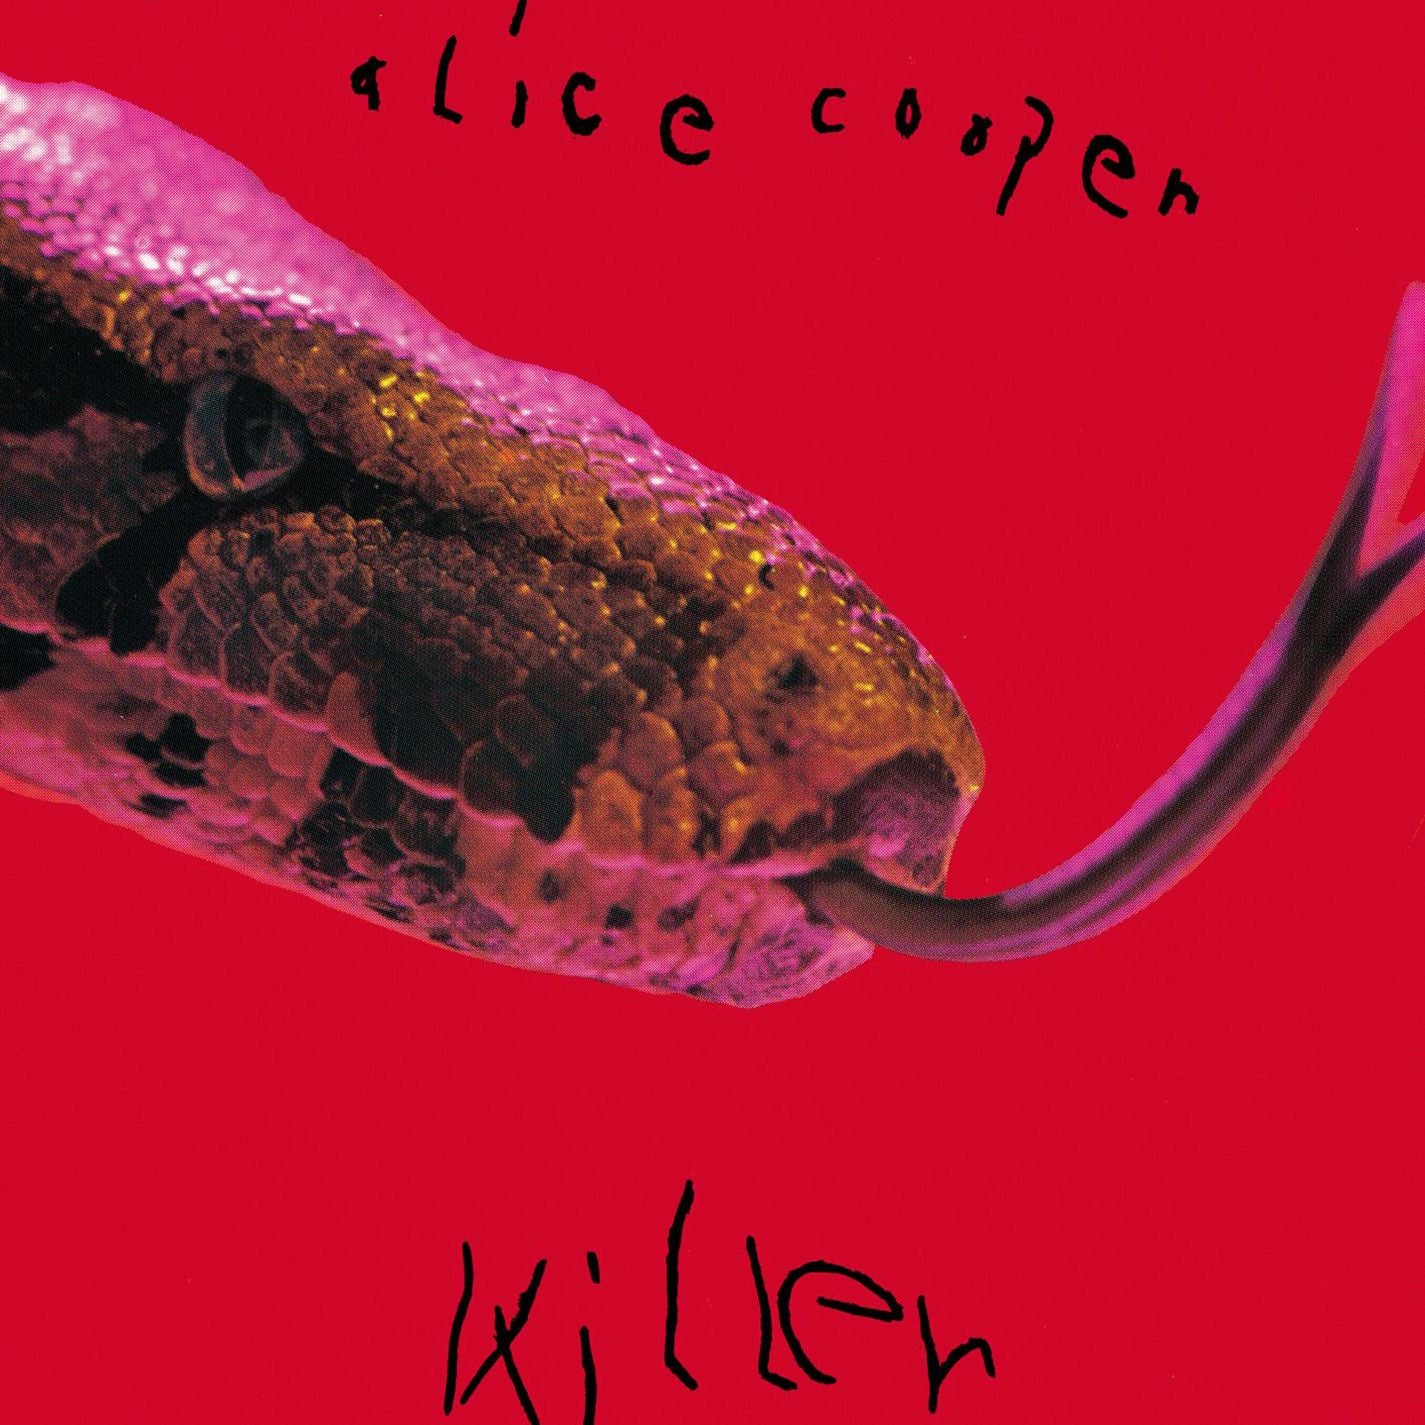 Alice Cooper ‎– Killer (1971) - New Vinyl Lp 2018 Rhino Limited Reissue on Red/Black Vinyl - Rock